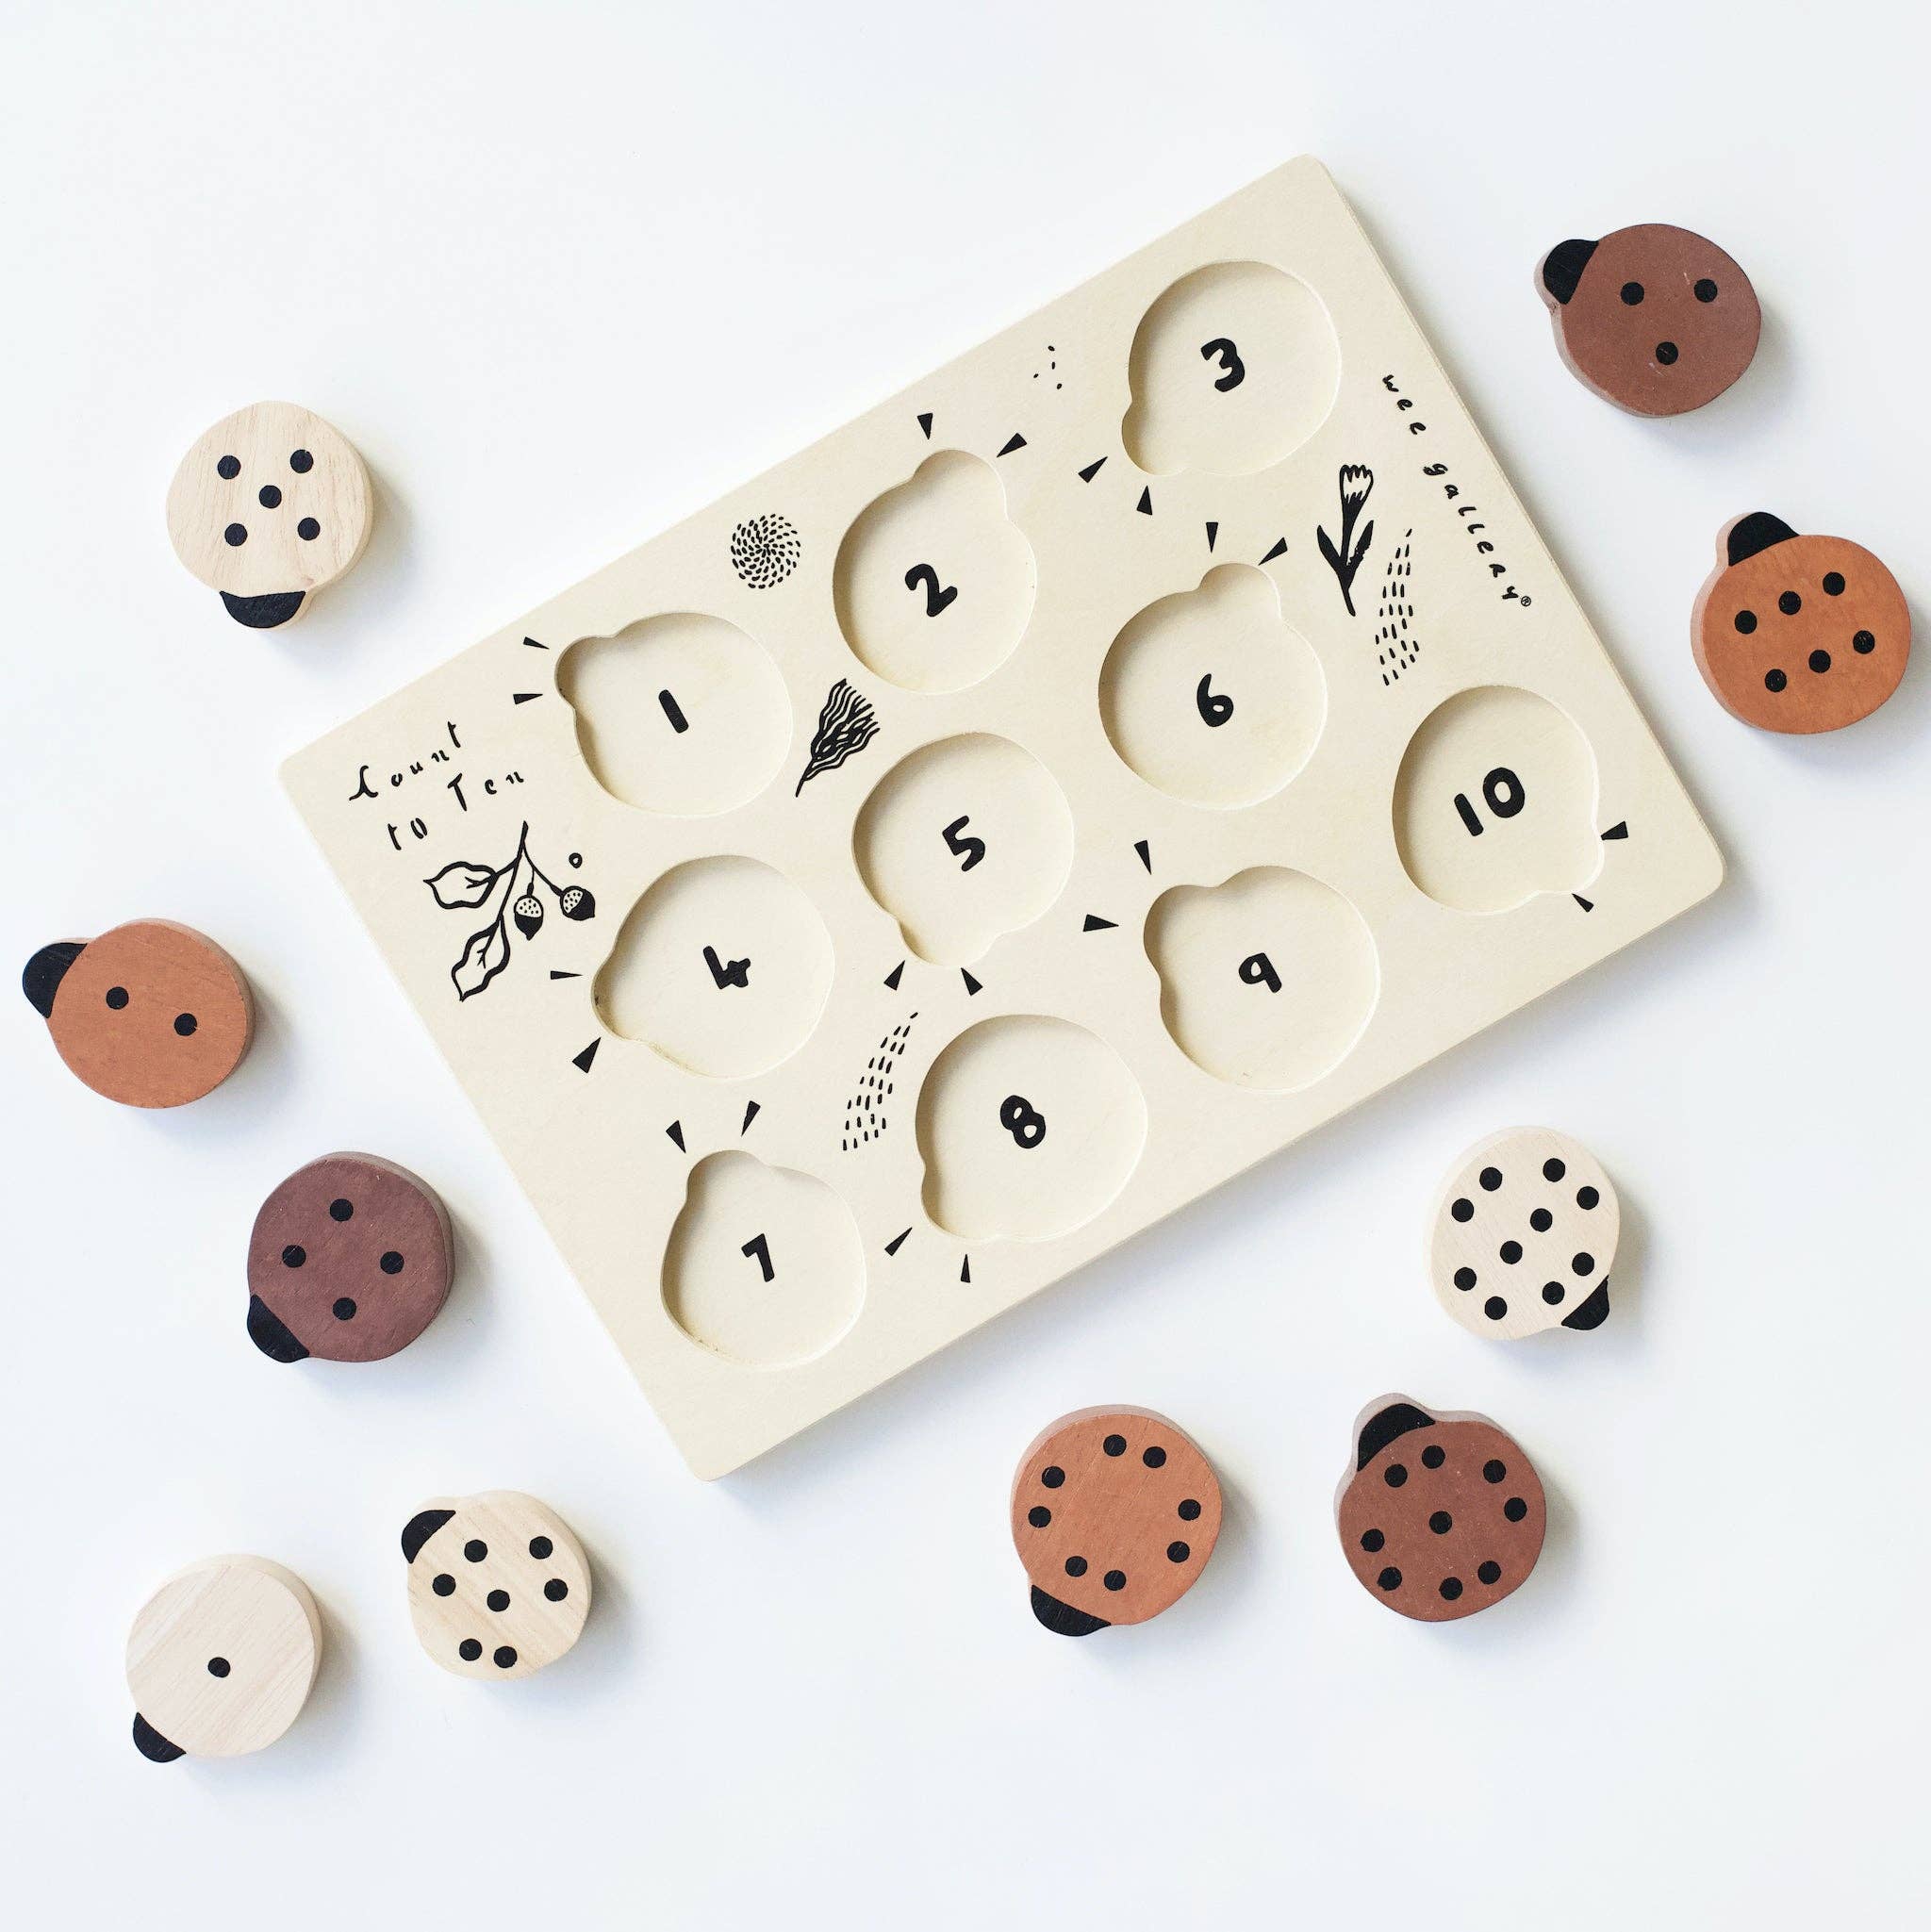 Wooden Ladybug Puzzle